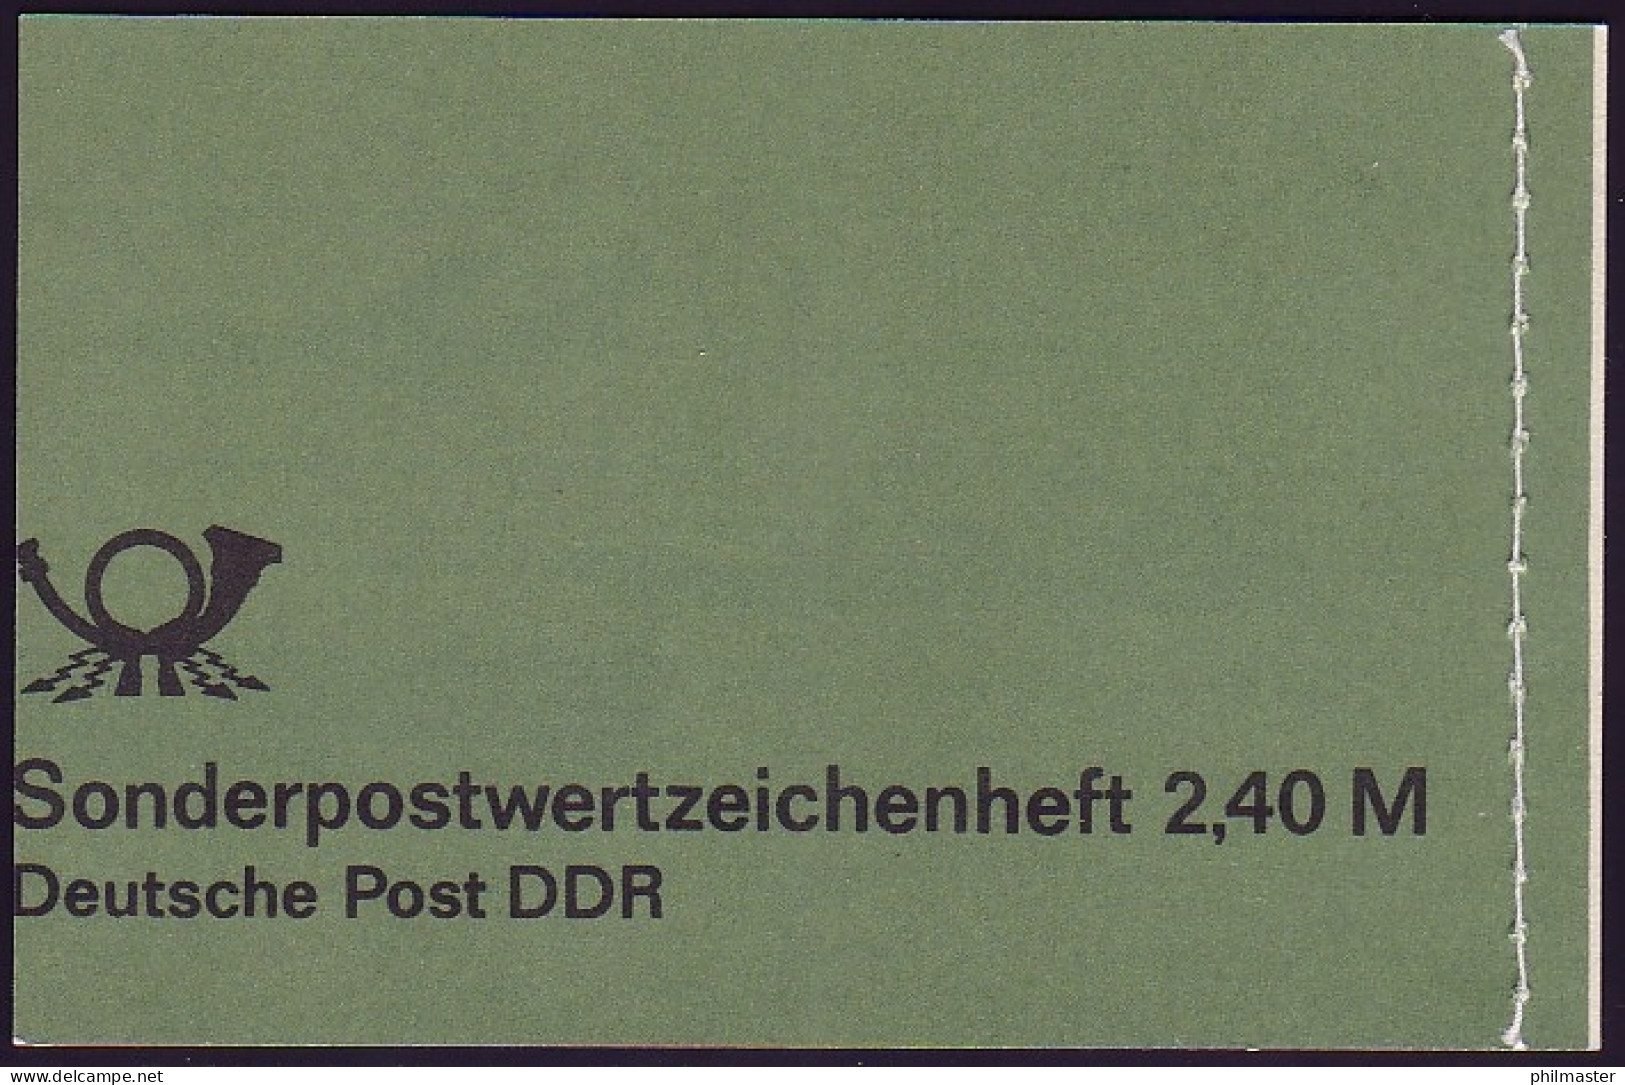 MH 8 SOZPHILEX 1985 - Verschnitt Der 4. DS, ** - Carnets